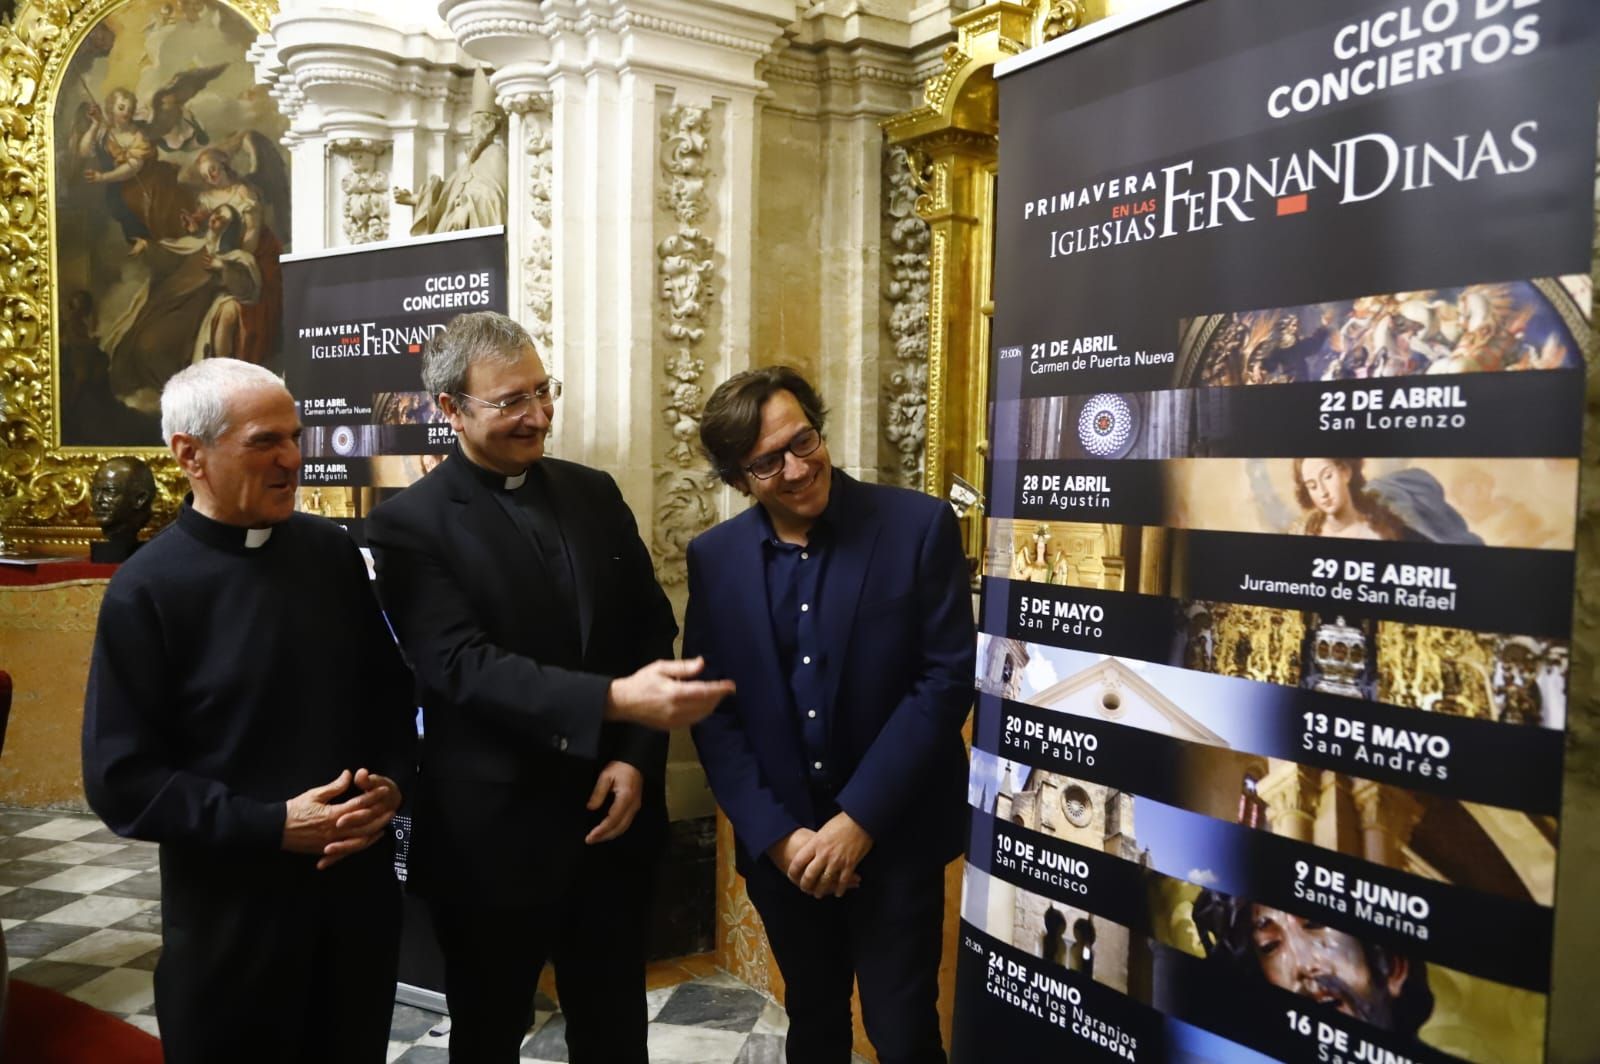 La Orquesta y Coro de la Catedral de Córdoba ofrecerá once conciertos  gratuitos en las iglesias fernandinas - Diario Córdoba